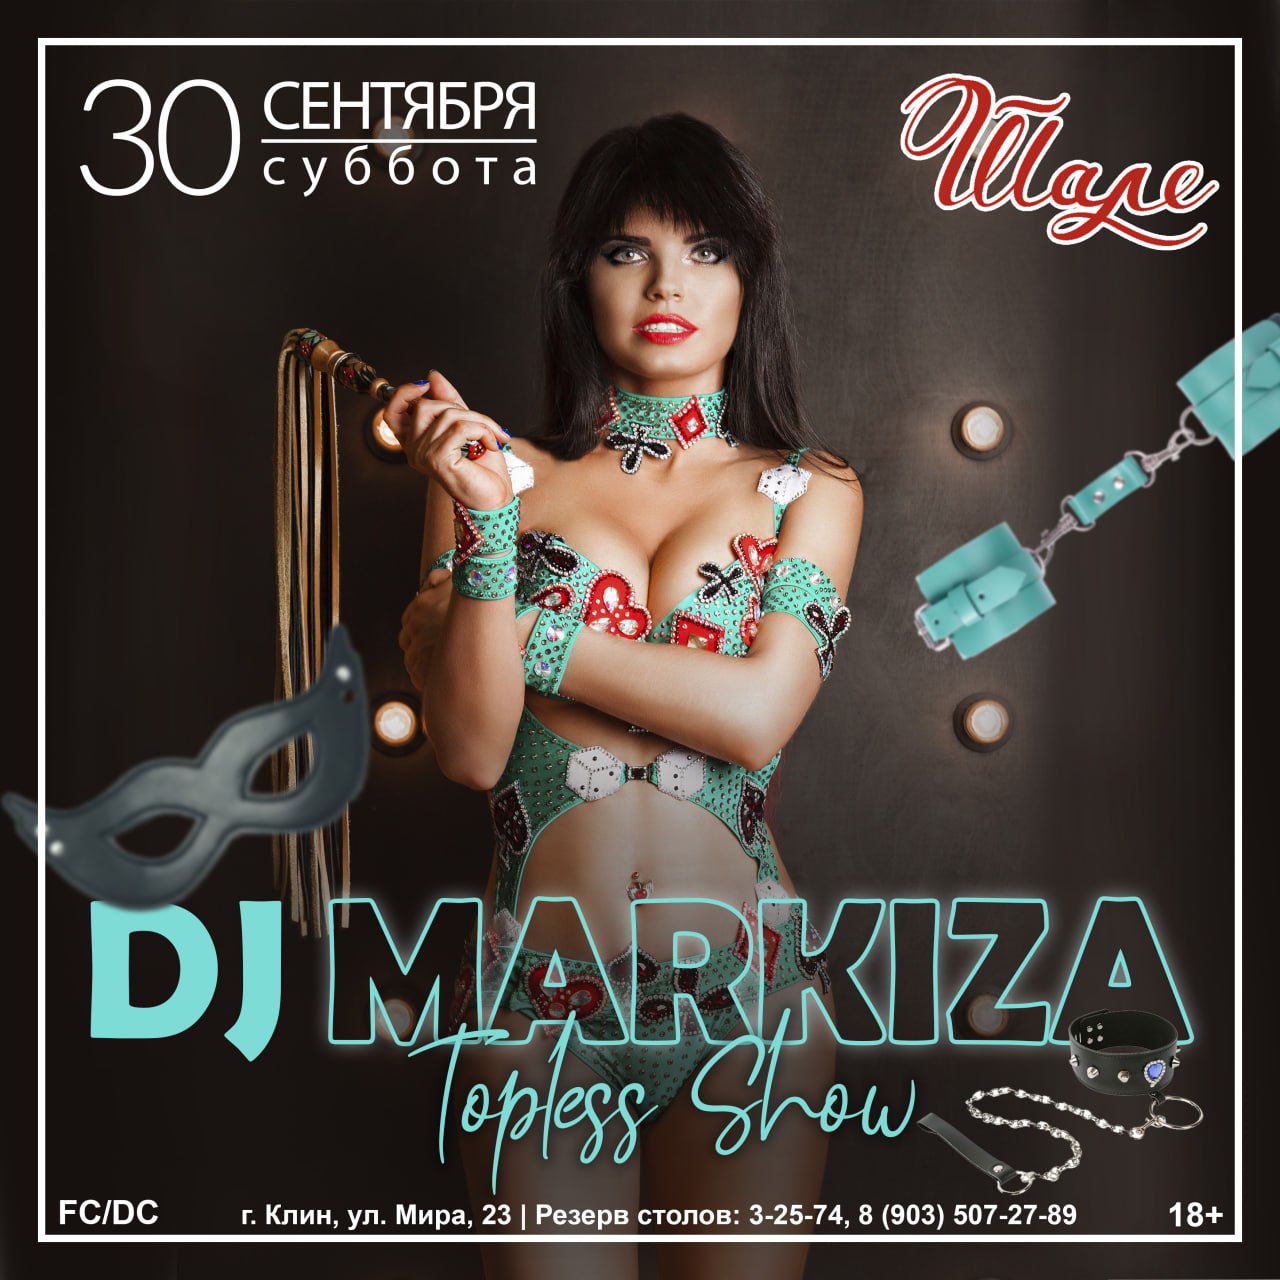 DJ Markiza